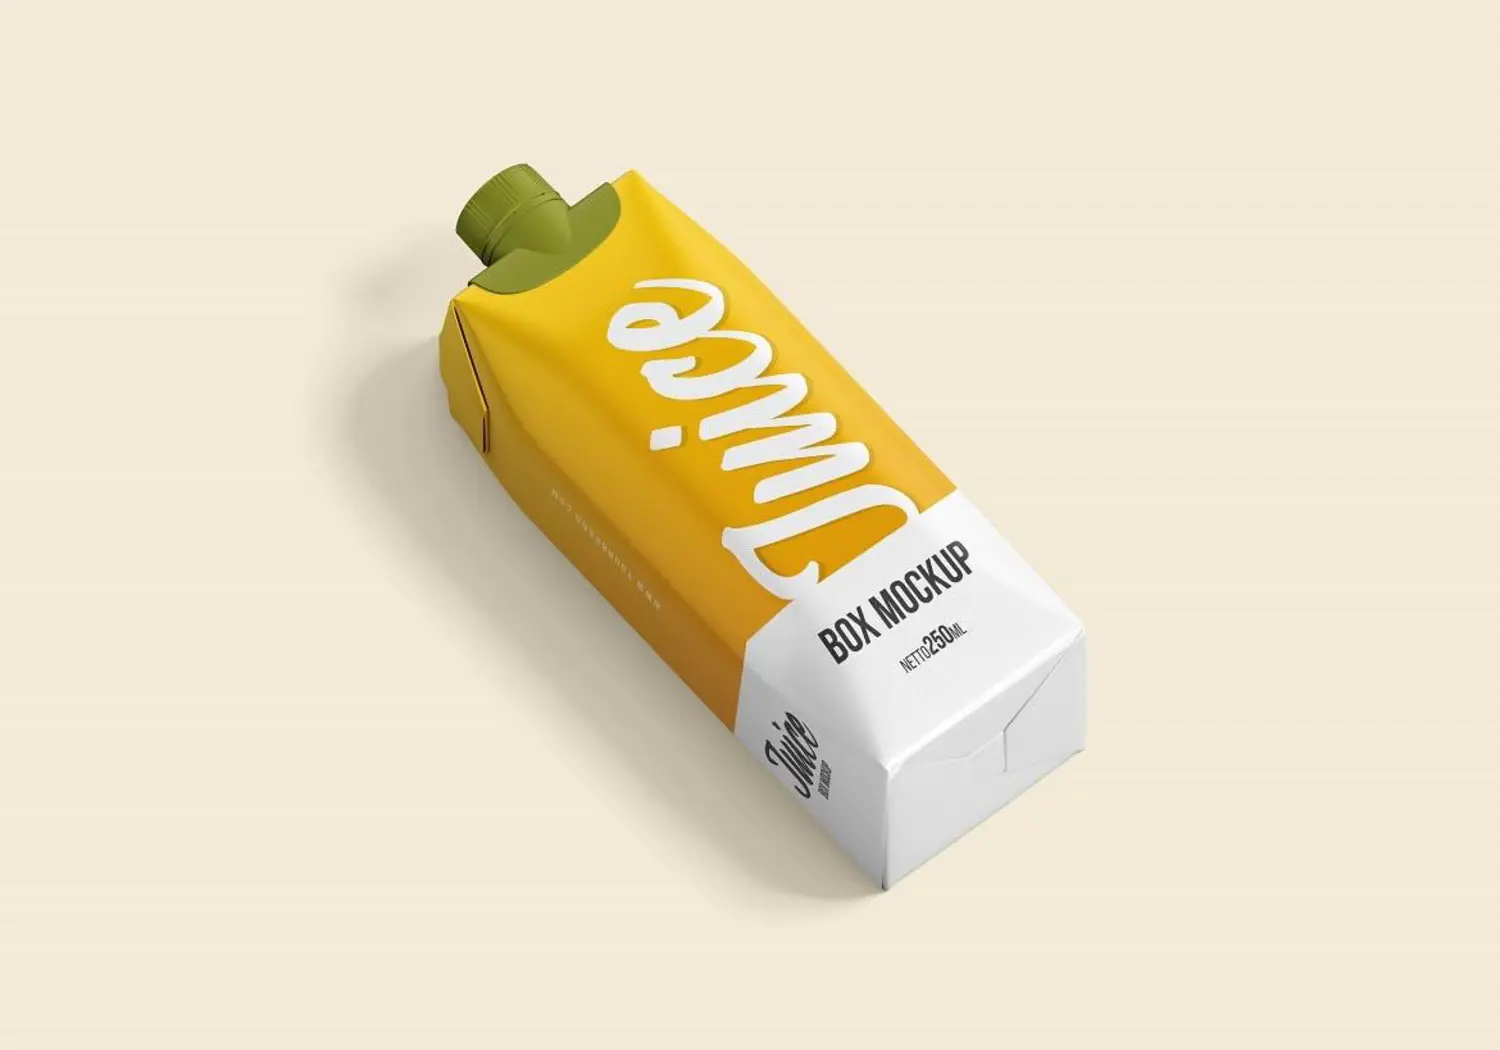 33 果汁盒瓶牛奶纸盒品牌包装设计样机v2 Juice Box – Mockup Vol